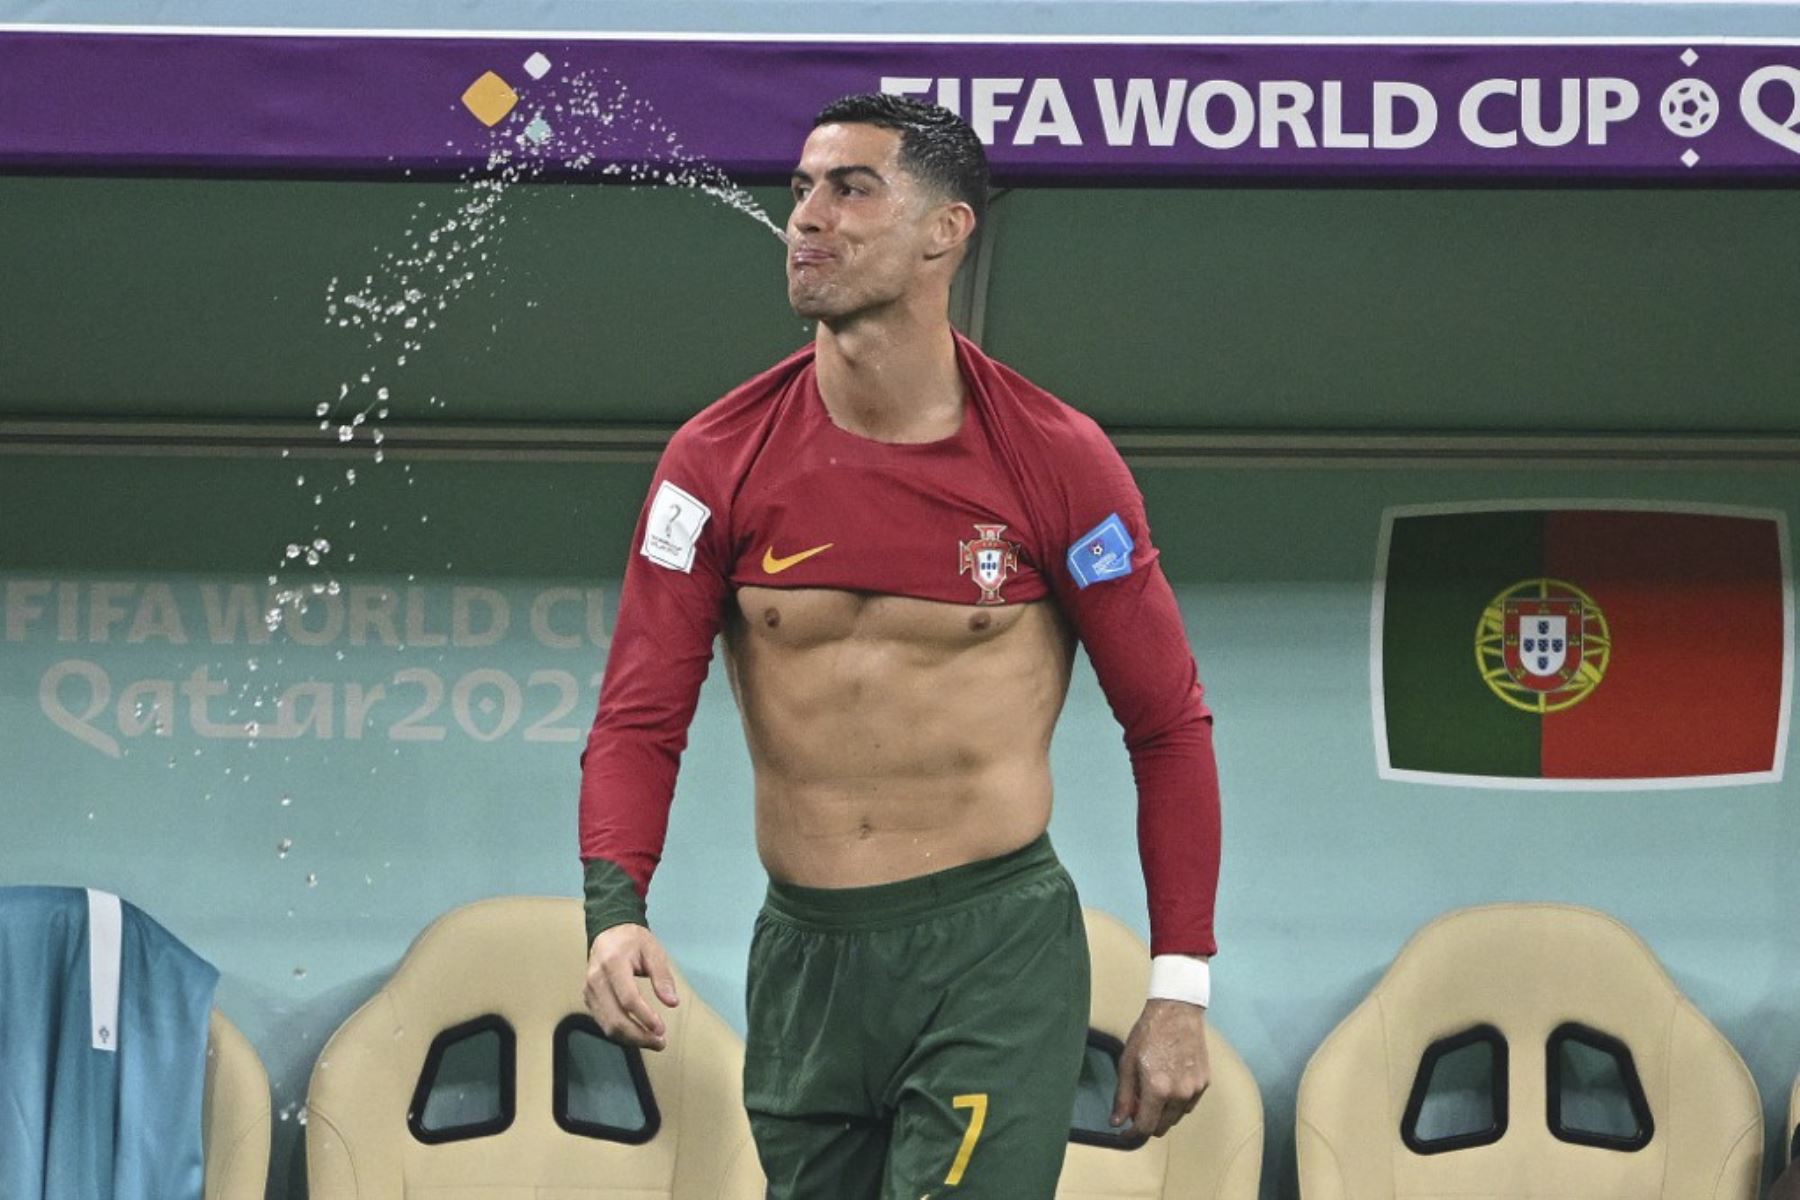 El delantero portugués #07 Cristiano Ronaldo escupe agua durante el partido de fútbol de octavos de final de la Copa Mundial Catar 2022 entre Portugal y Suiza en el Estadio Lusail en Lusail, al norte de Doha

Foto: AFP